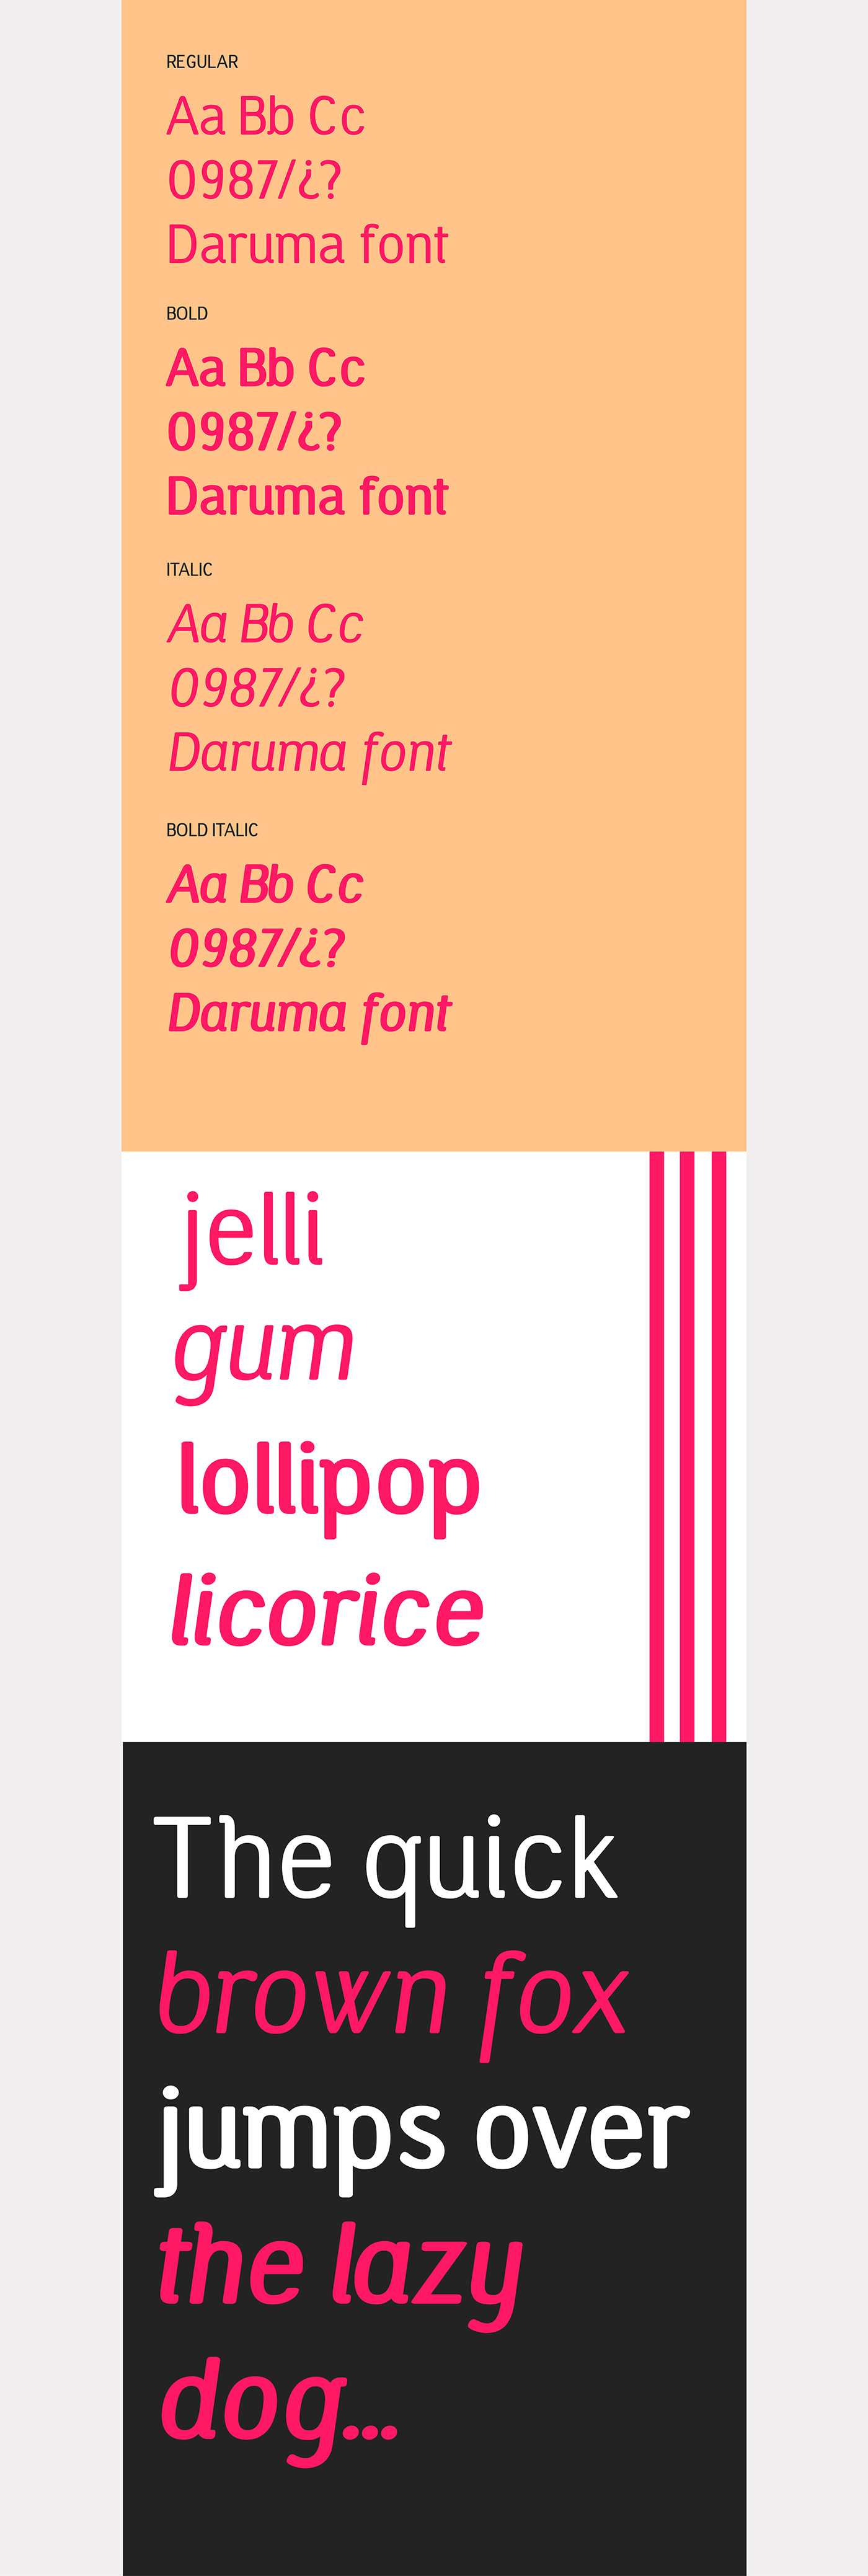 type Typeface rounded font regular daruma Candy colorful Illustrator FontLab bold italic Typefamily